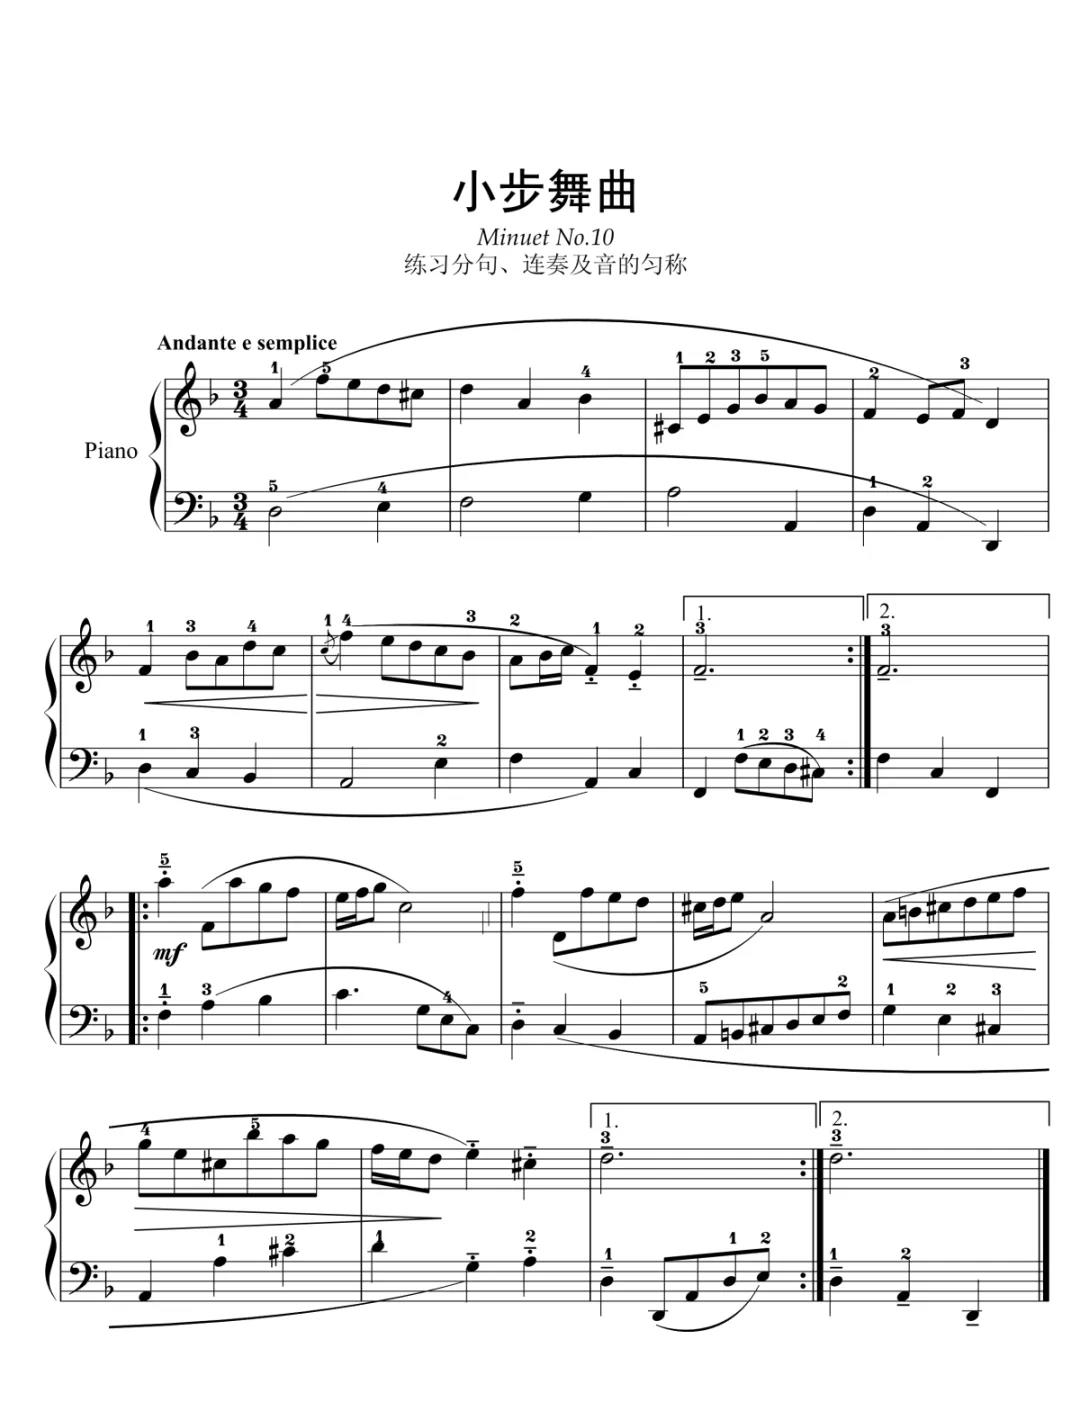 小步舞曲D334(1815年秋创作)